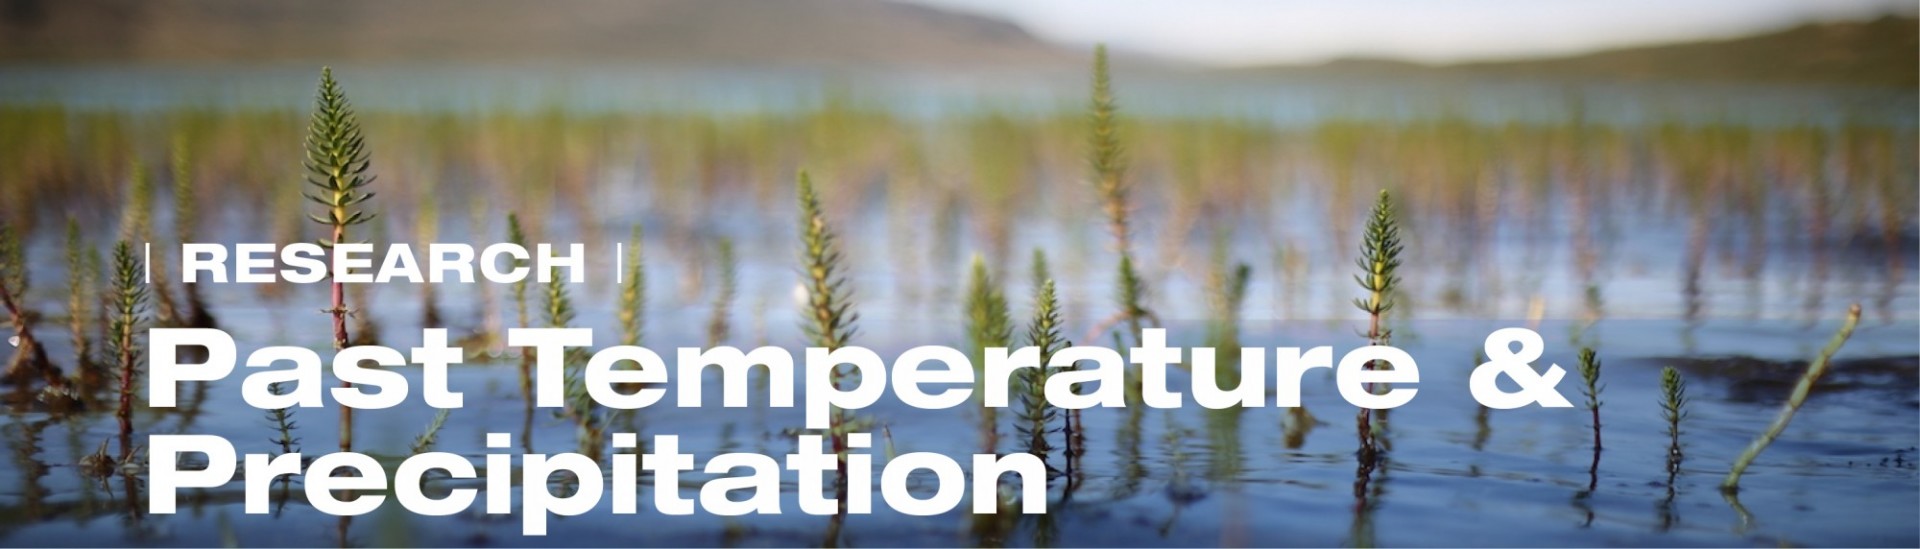 Lake edge plants - Research: Past Temperature & Precipitation